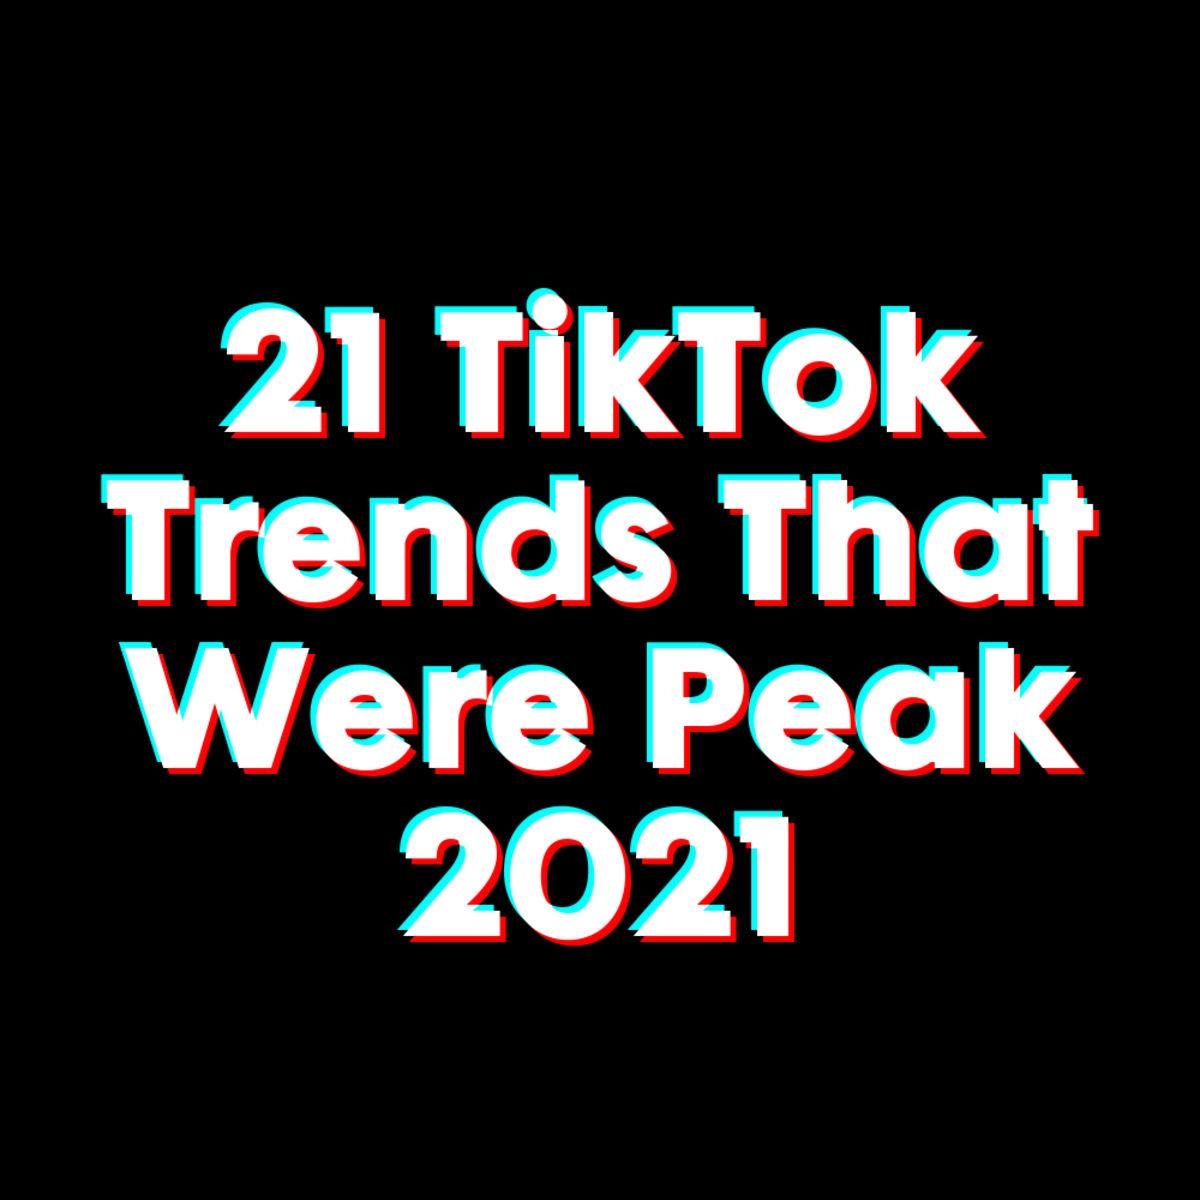 21 TikTok Trends That Were Peak 2021